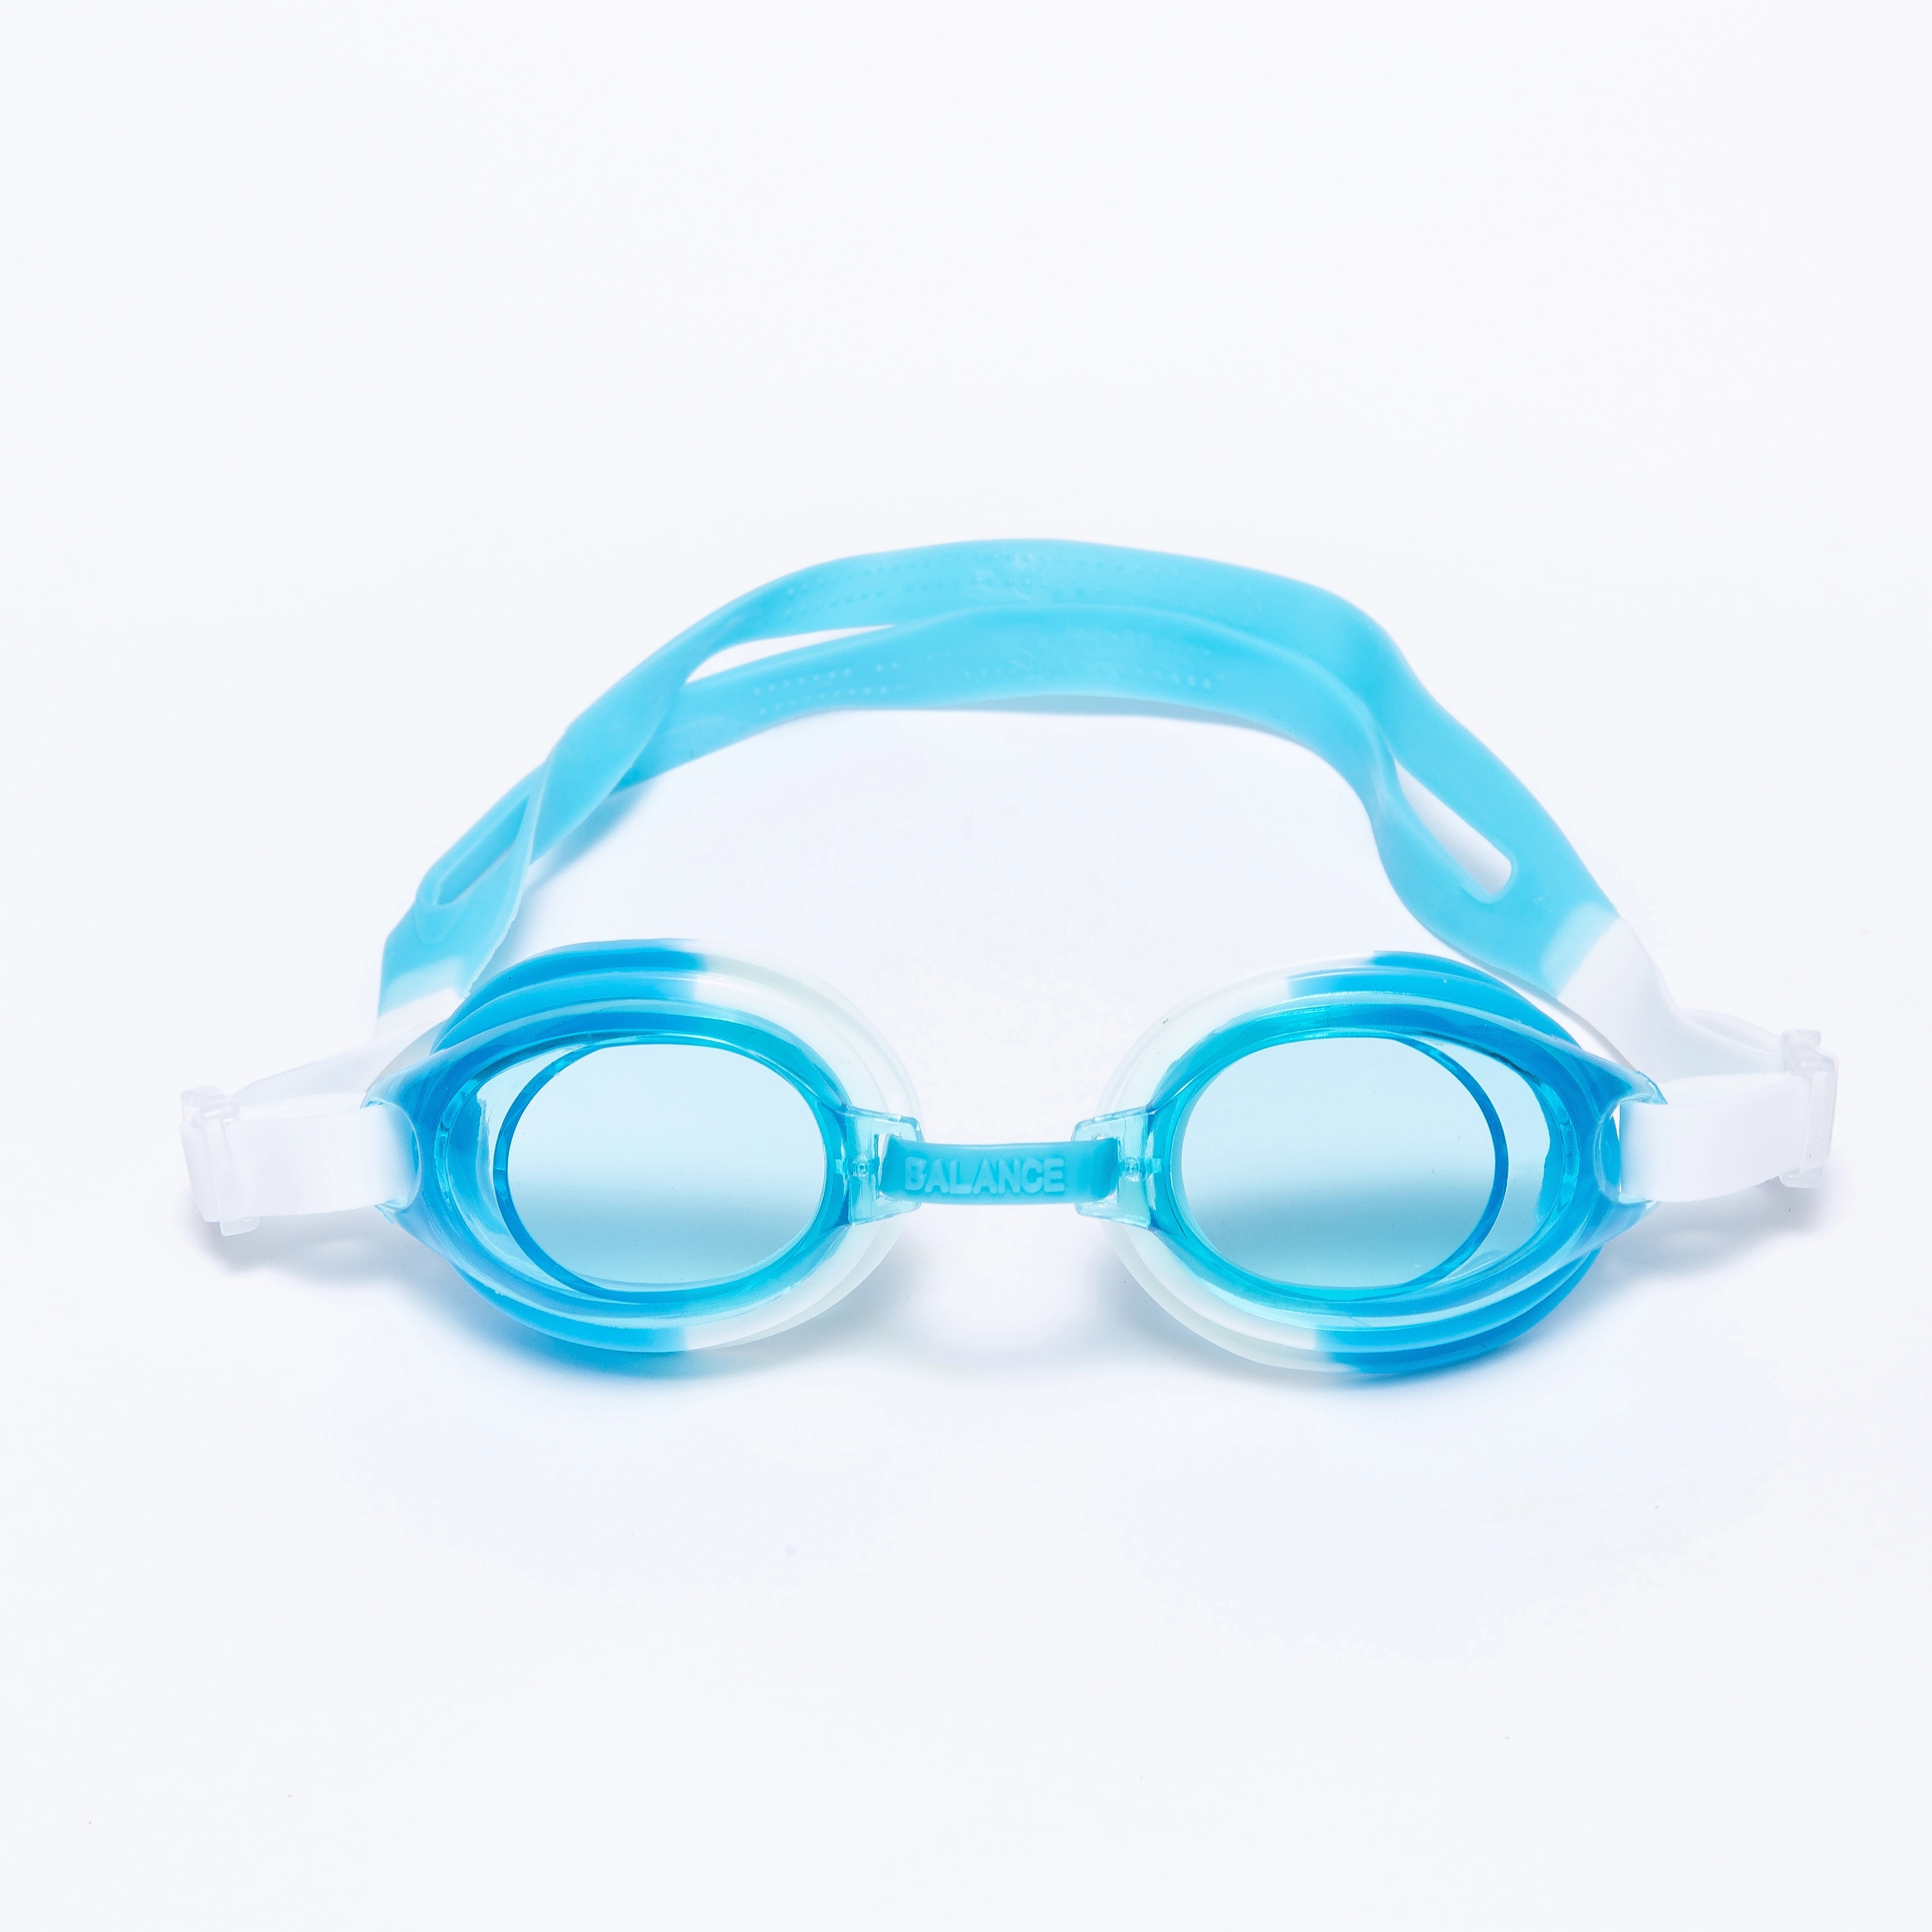 糖果色儿童游泳眼镜潜水镜盒装可爱透明泳镜儿童图